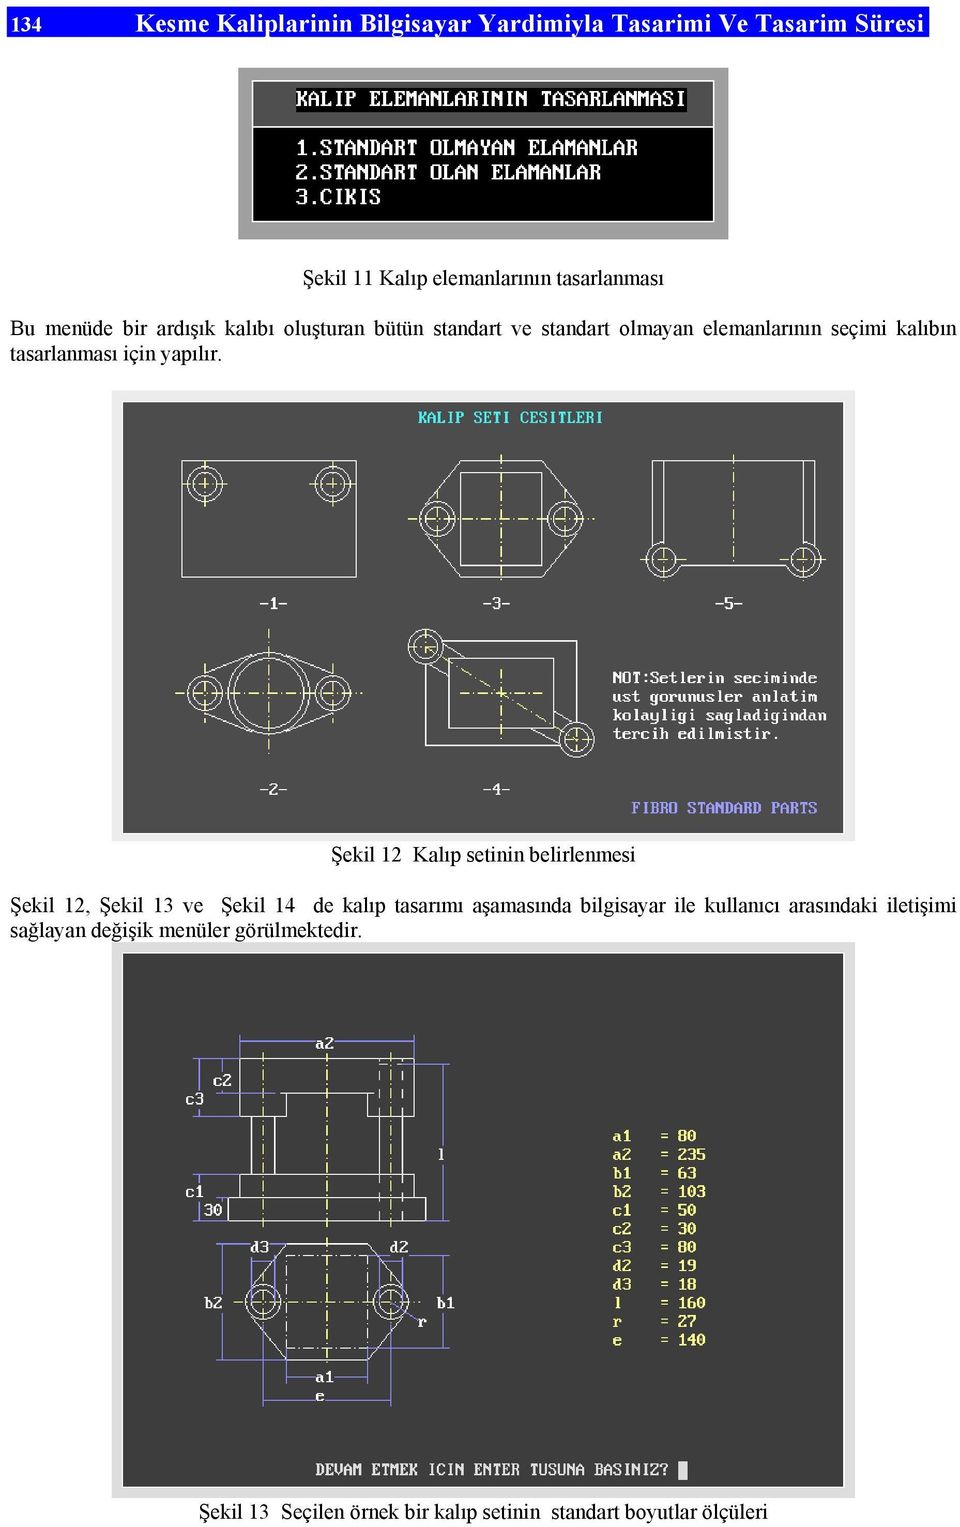 Şekil 12 Kalıp setinin belirlenmesi Şekil 12, Şekil 13 ve Şekil 14 de kalıp tasarımı aşamasında bilgisayar ile kullanıcı